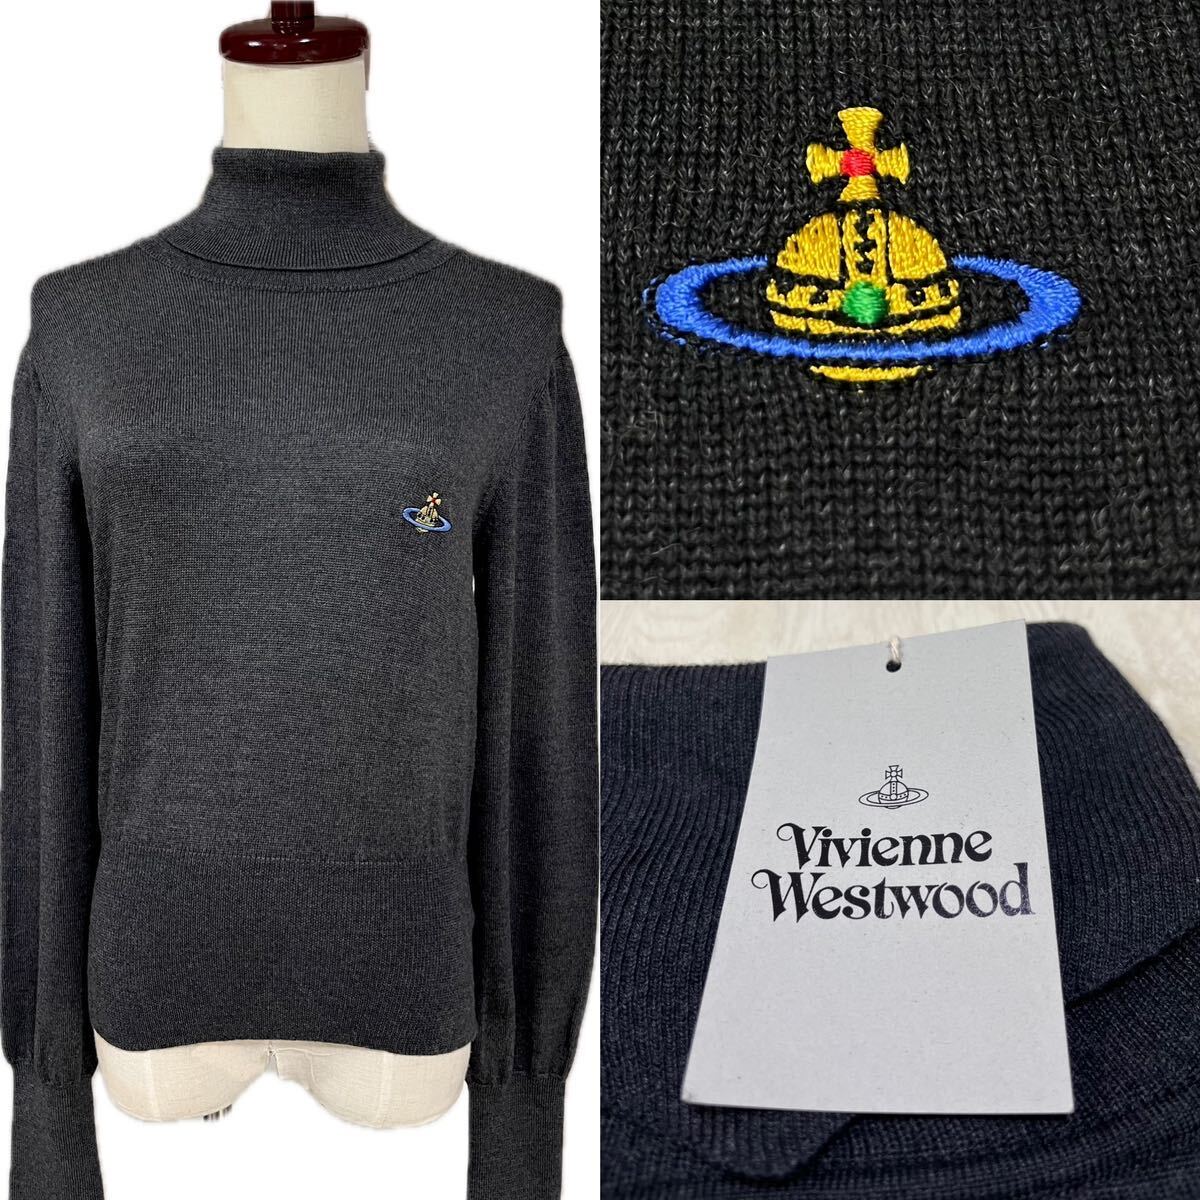  Vivienne Westwood ta-toru neck sweater Italy made Vivienne Westwood regular goods unused melino wool 